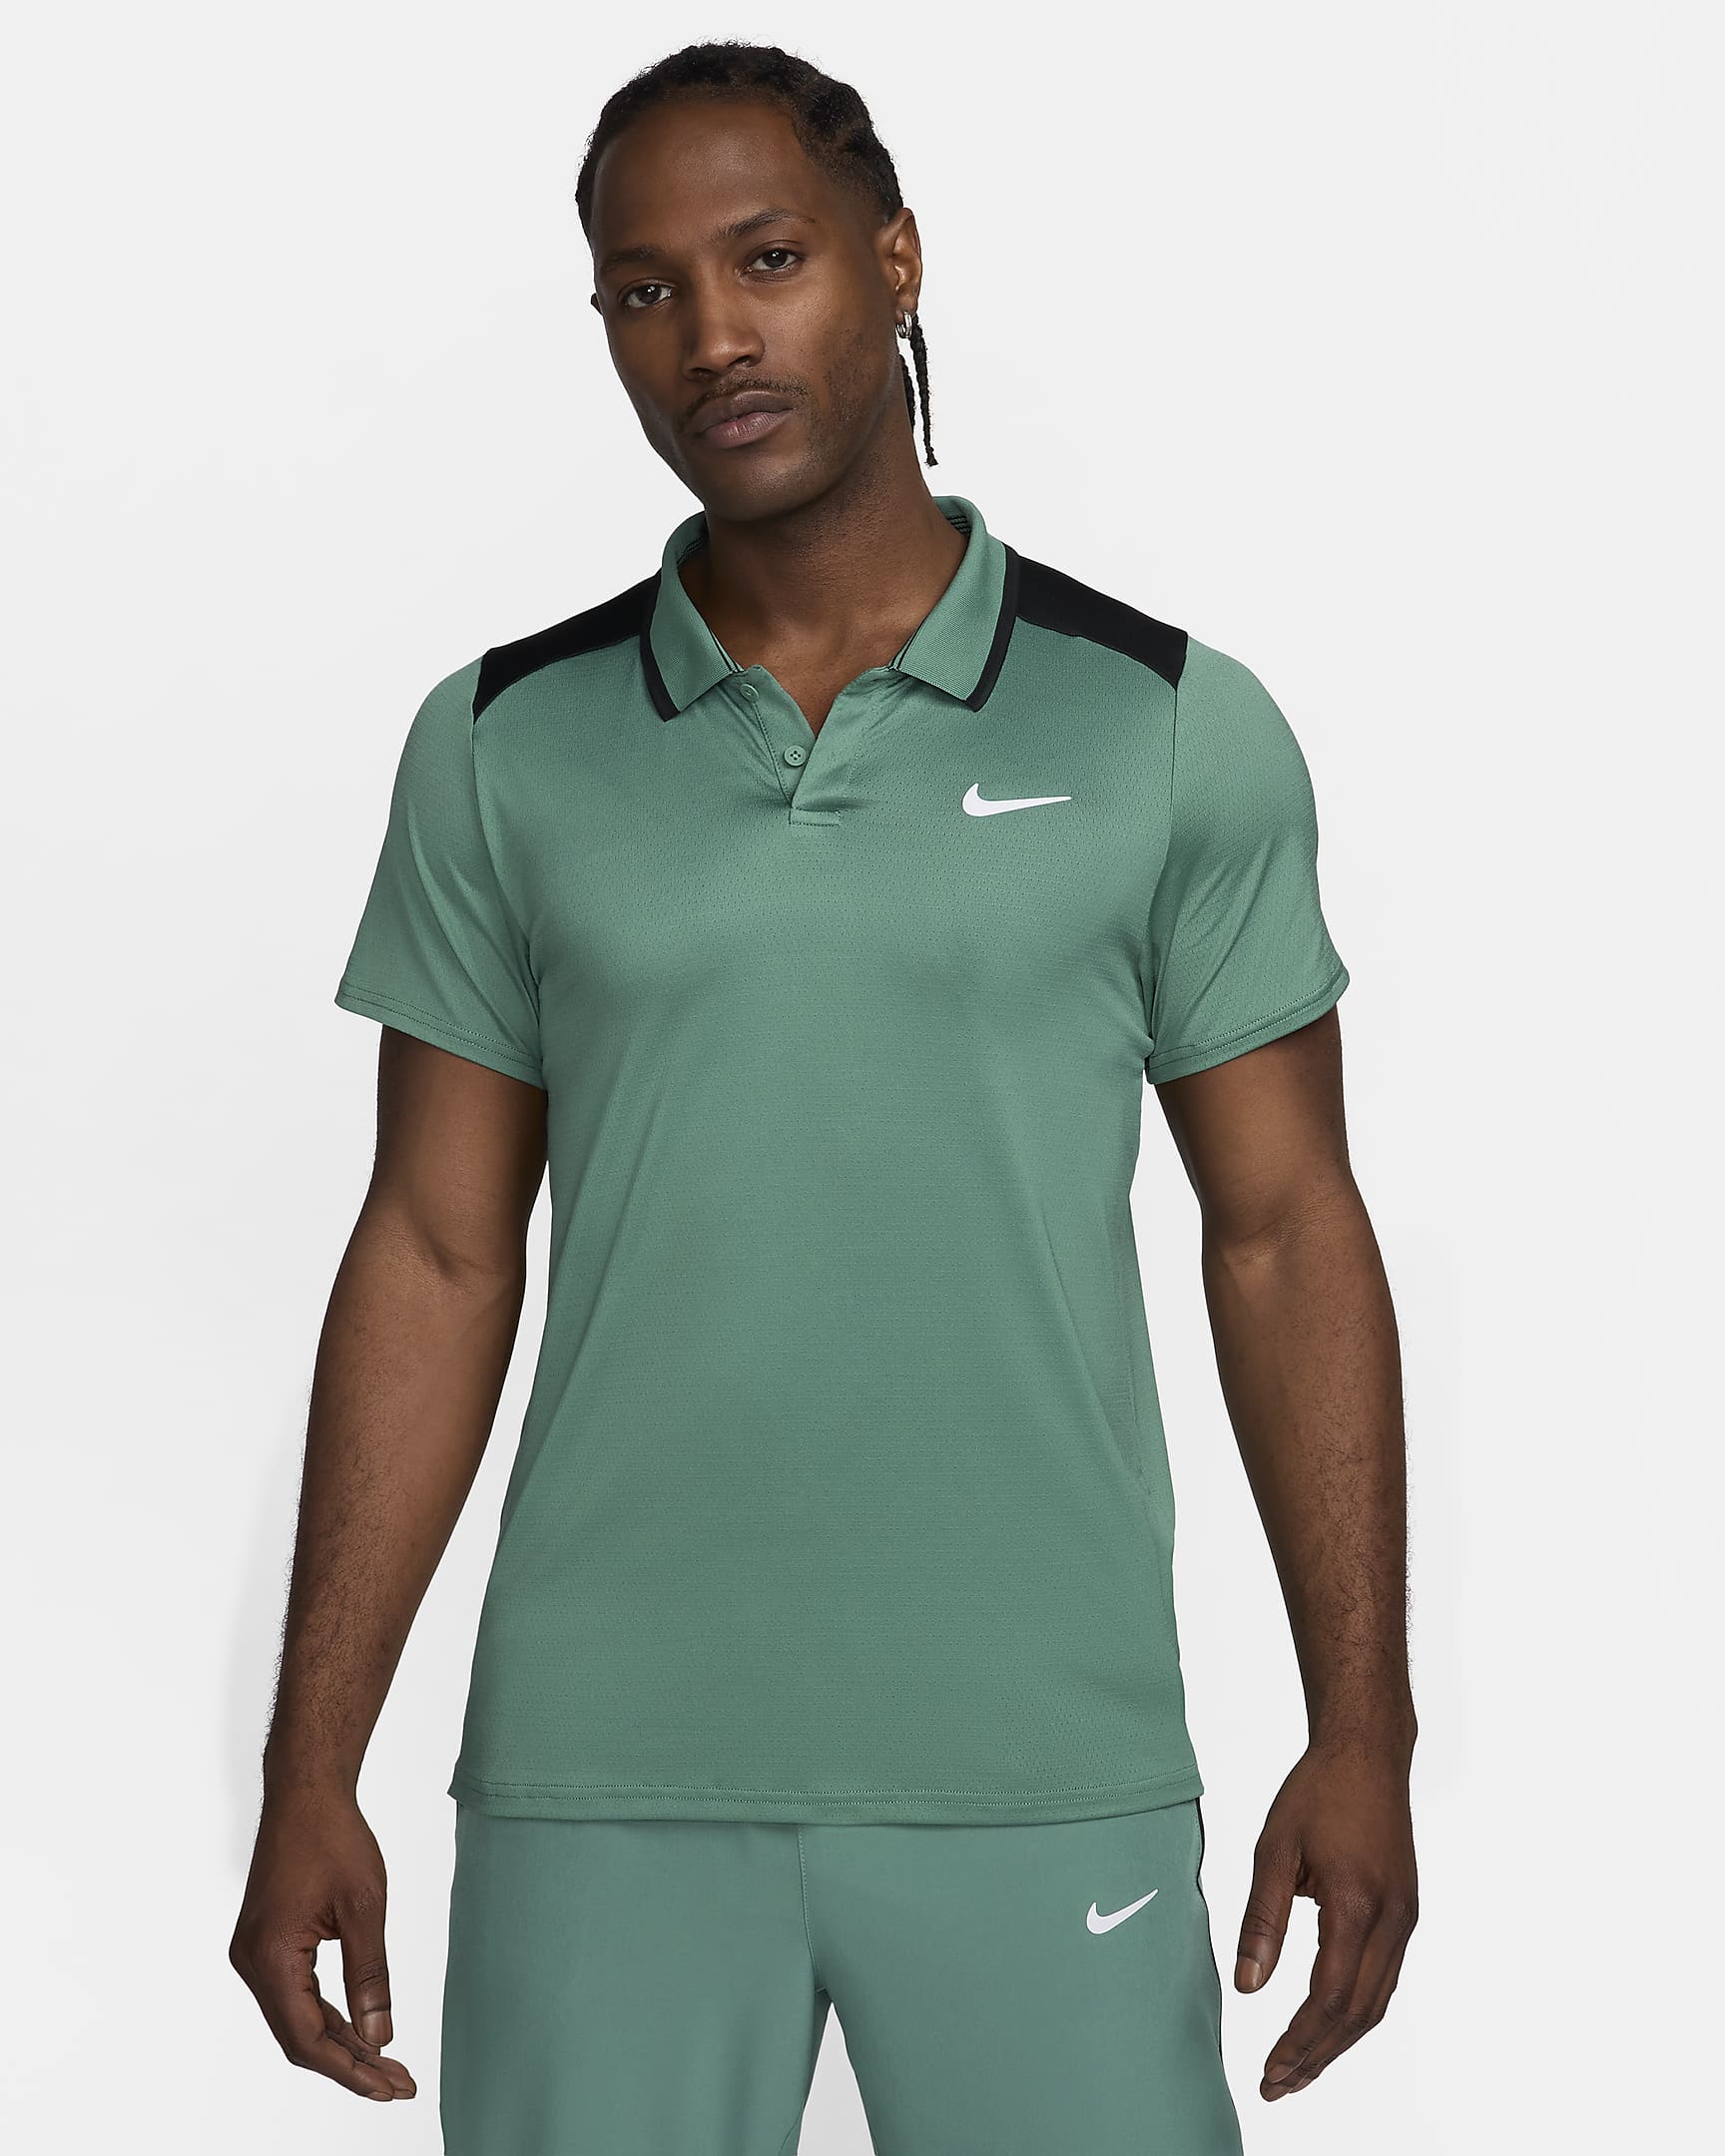 NikeCourt Advantage Men's Tennis Polo - Bicoastal/Black/White